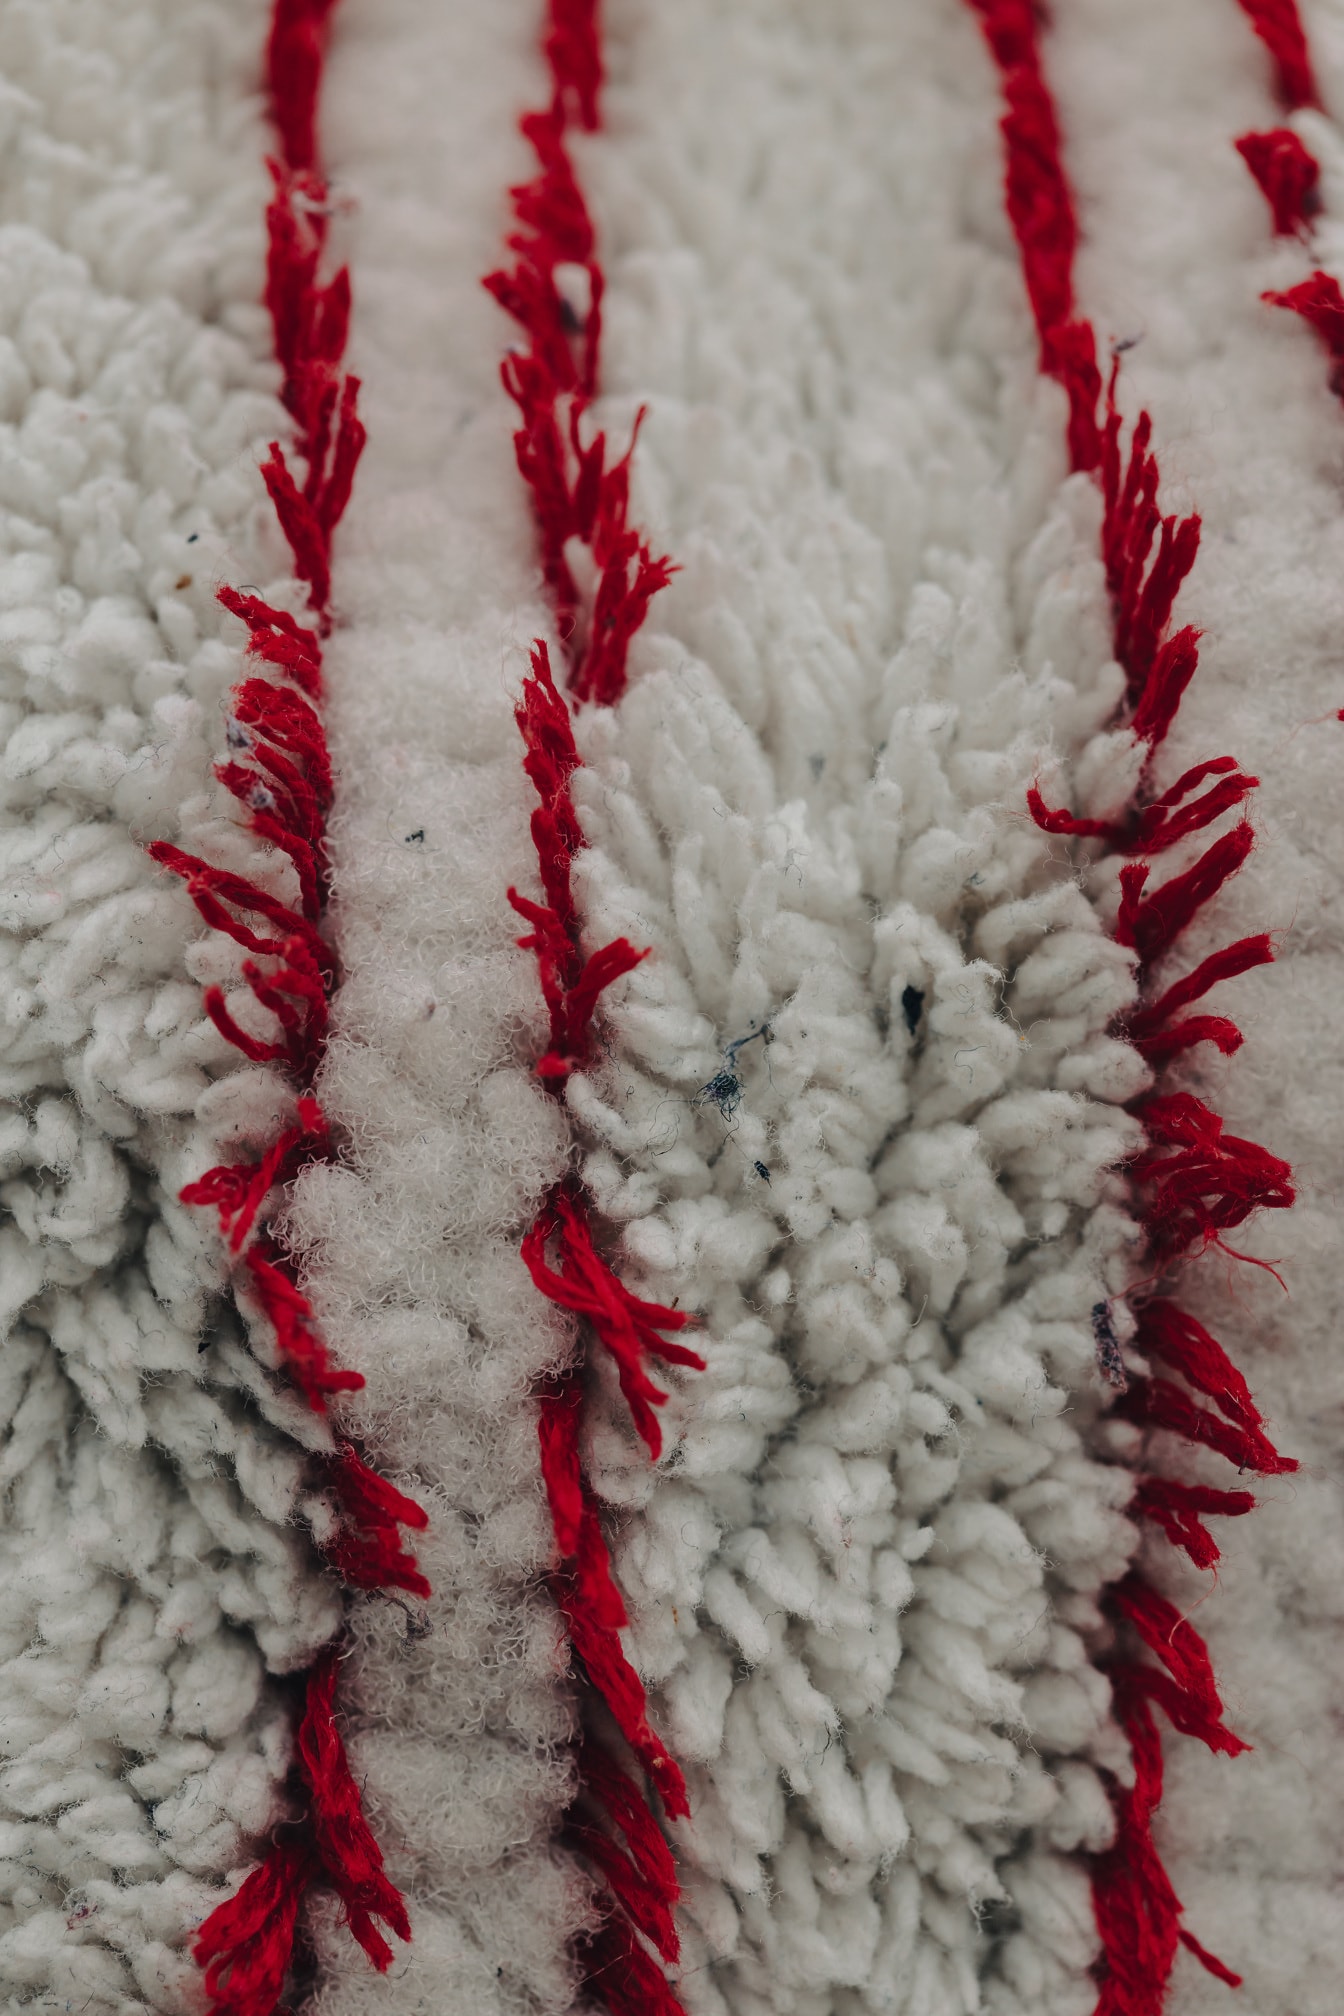 Tamnocrvene okomite linije vlakana u teksturi bijele vune